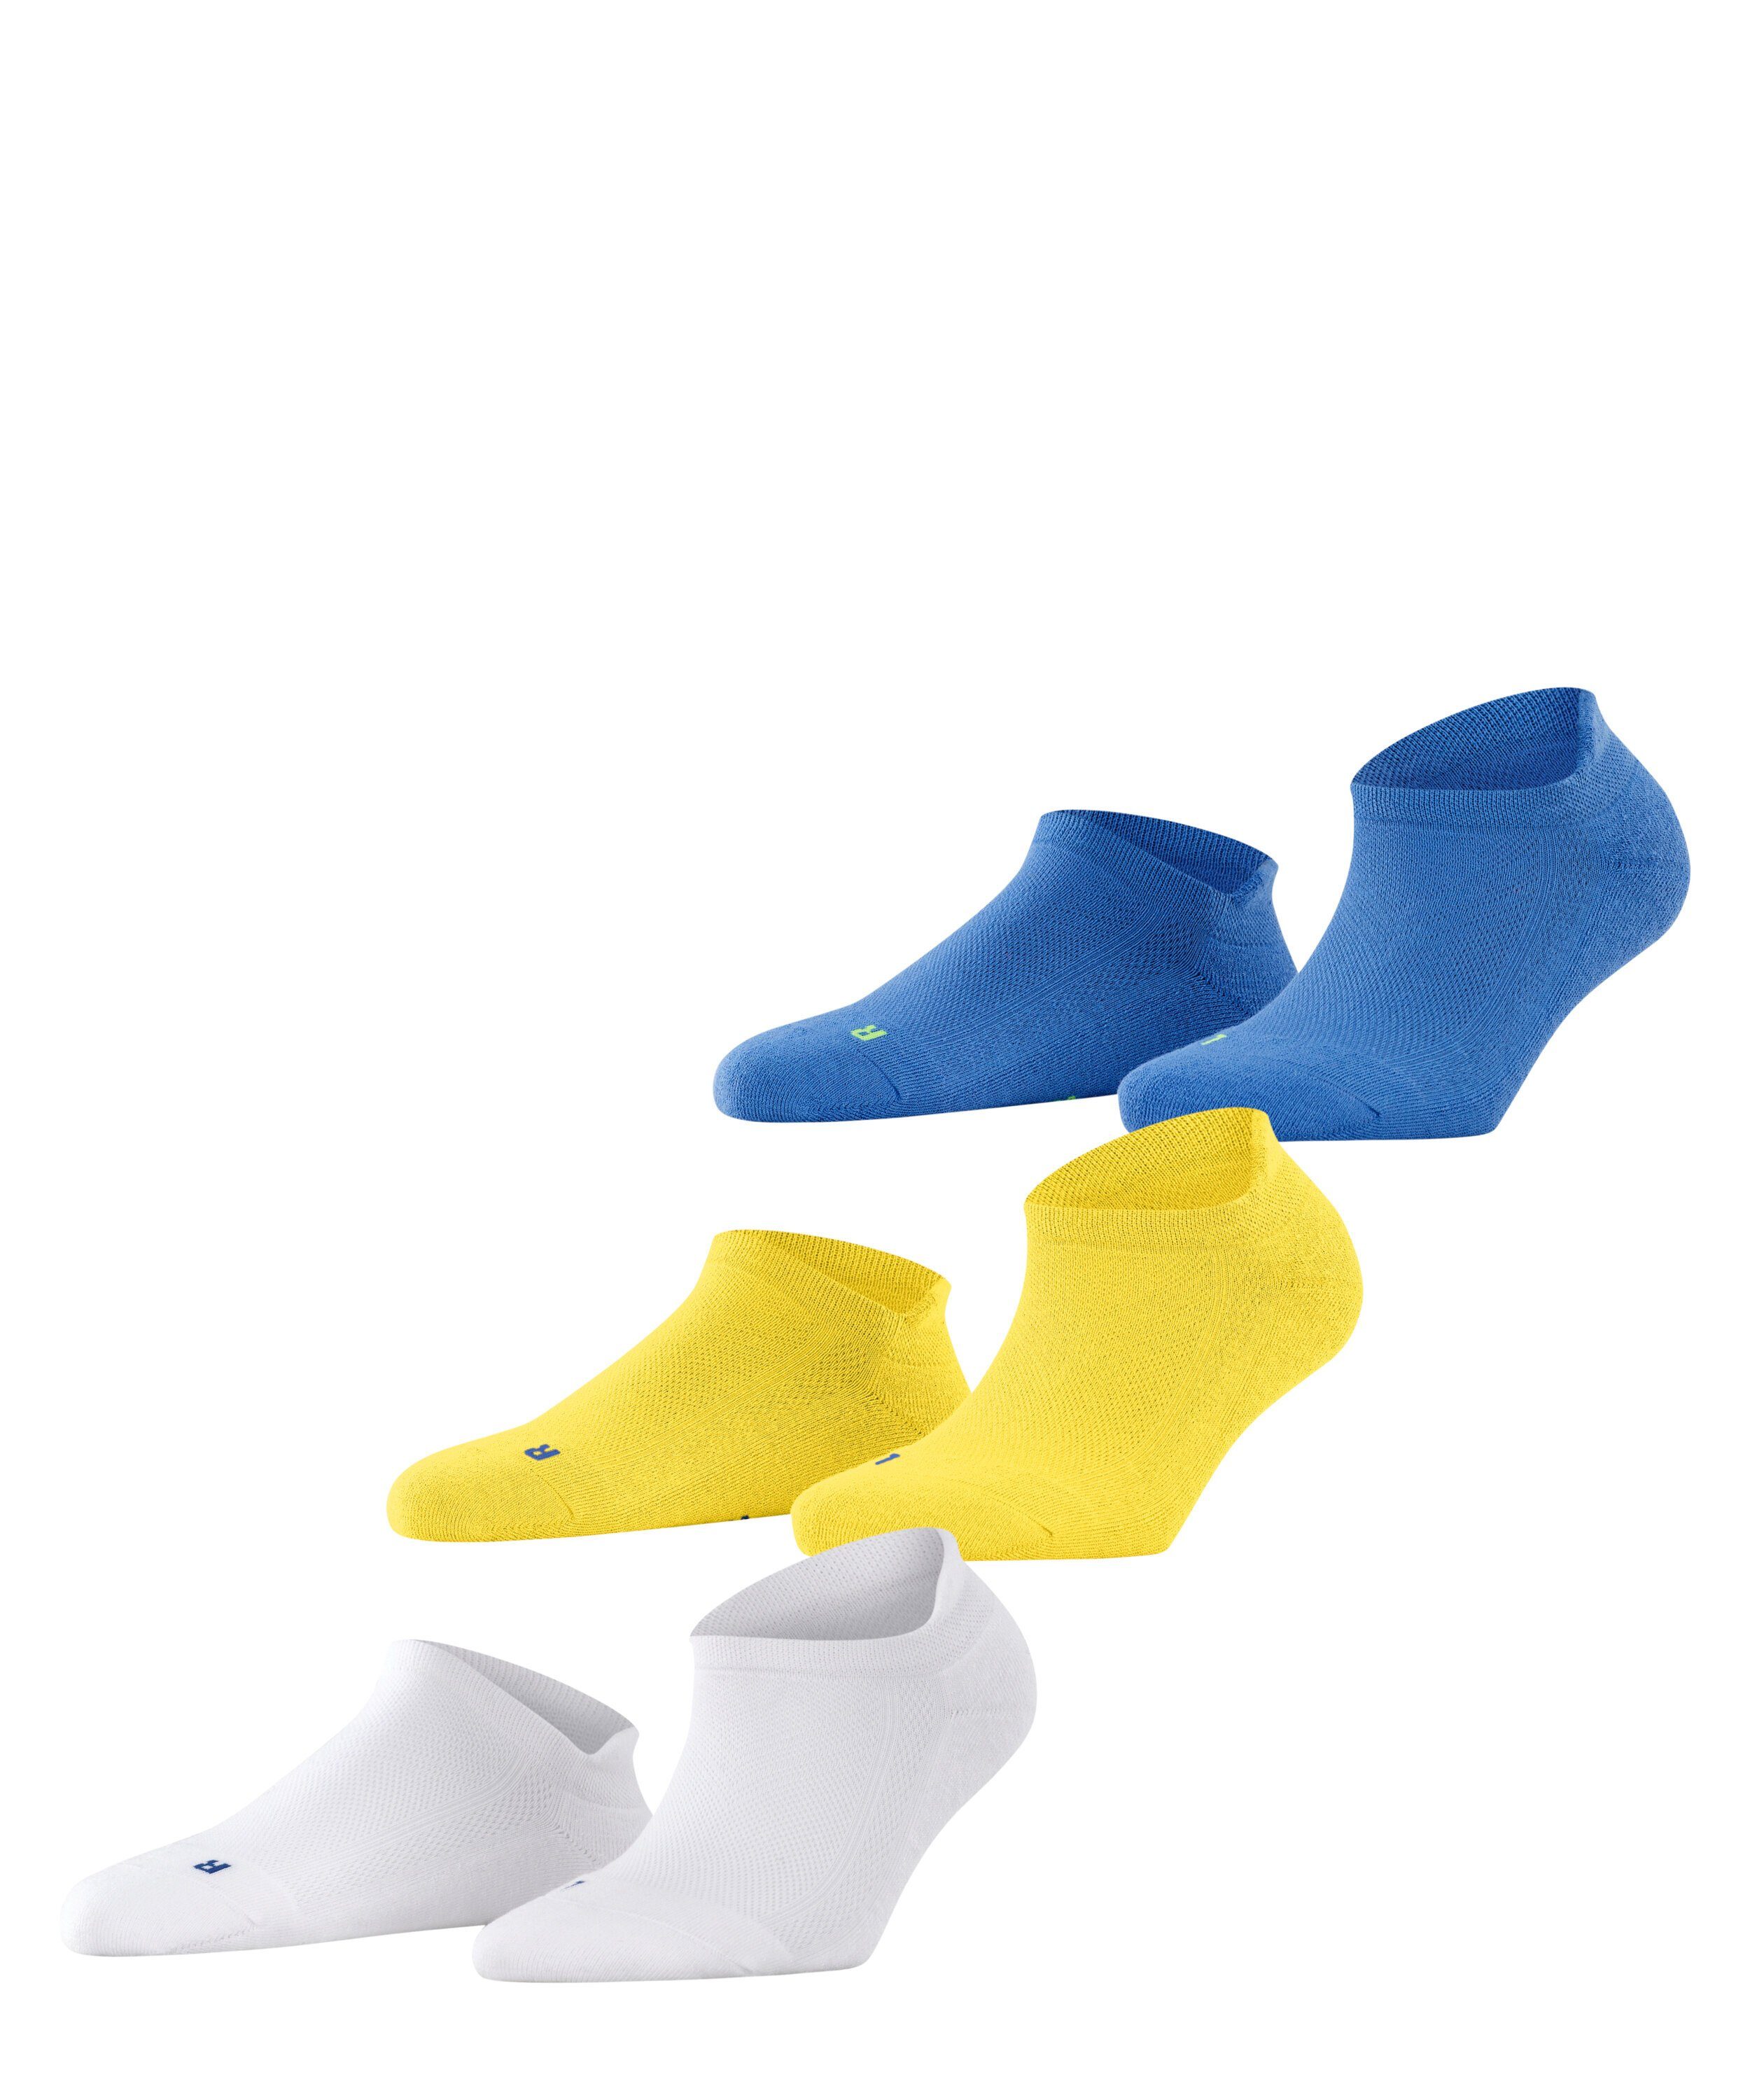 FALKE Socken Cool Kick 3-Pack (3-Paar) sortiment (0020)